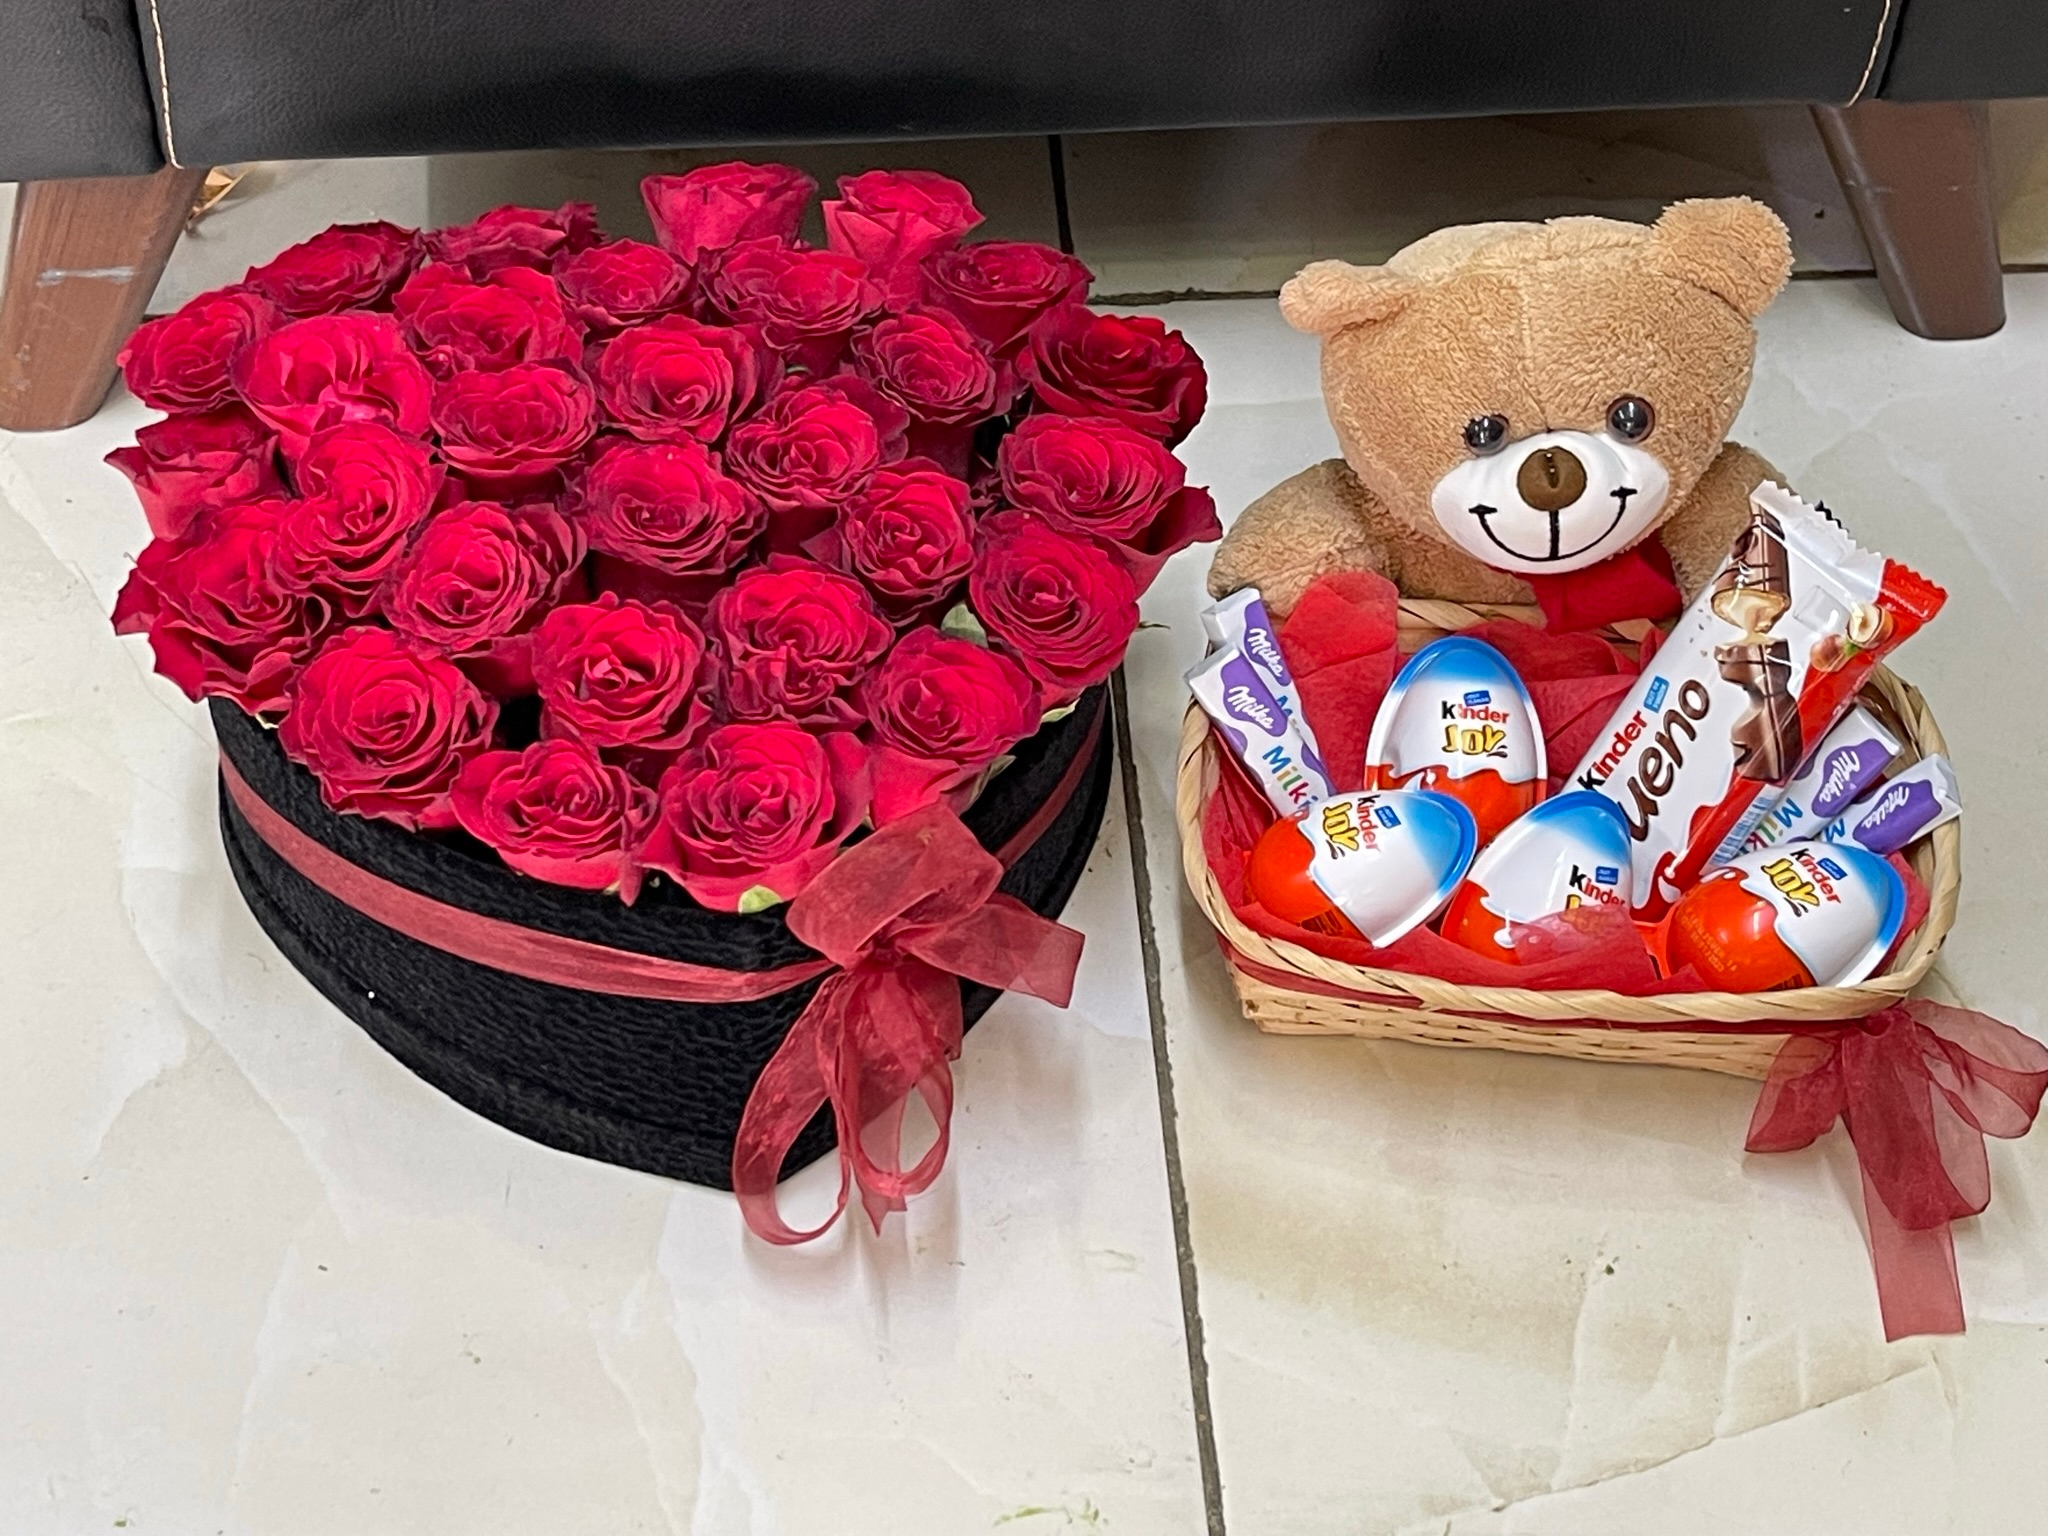  Kemer Flower 29 Roses in Heart Box and Gift Basket